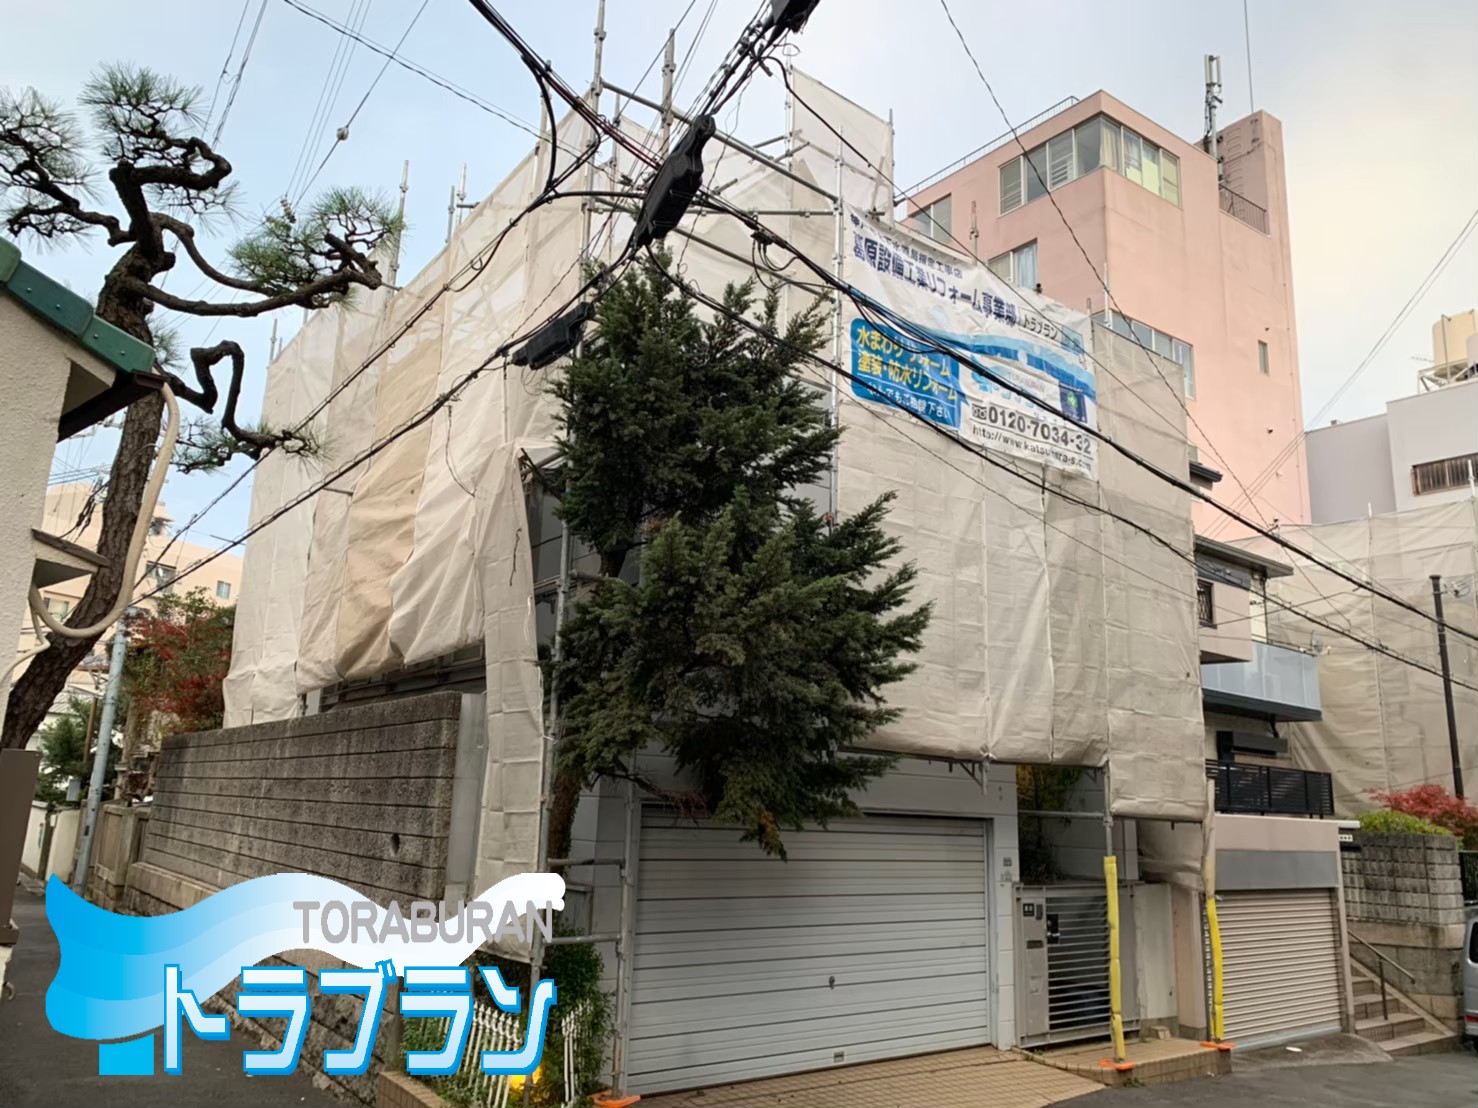 雨漏り 外壁修繕工事 塗装 神戸市 トラブラン